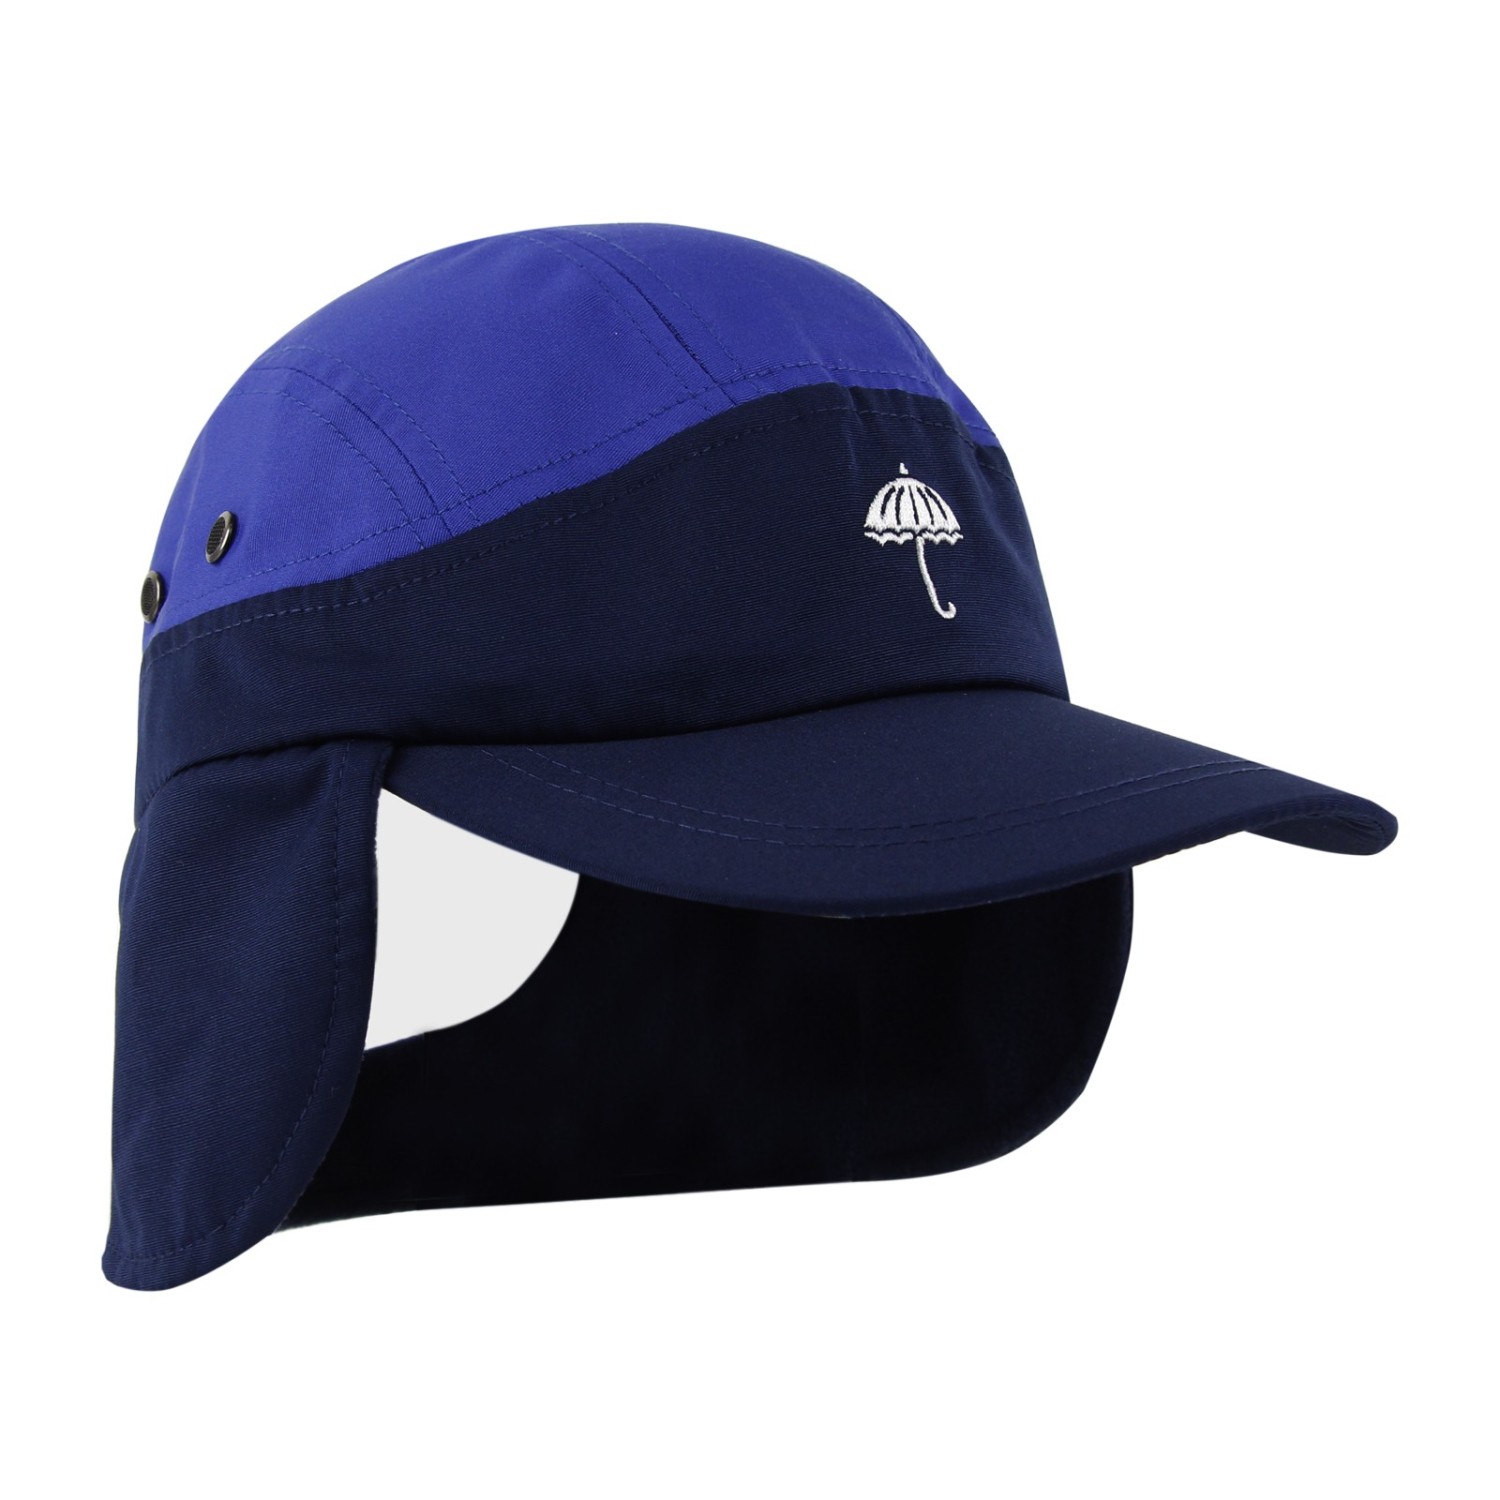 OVER CAP BLUE / NAVY